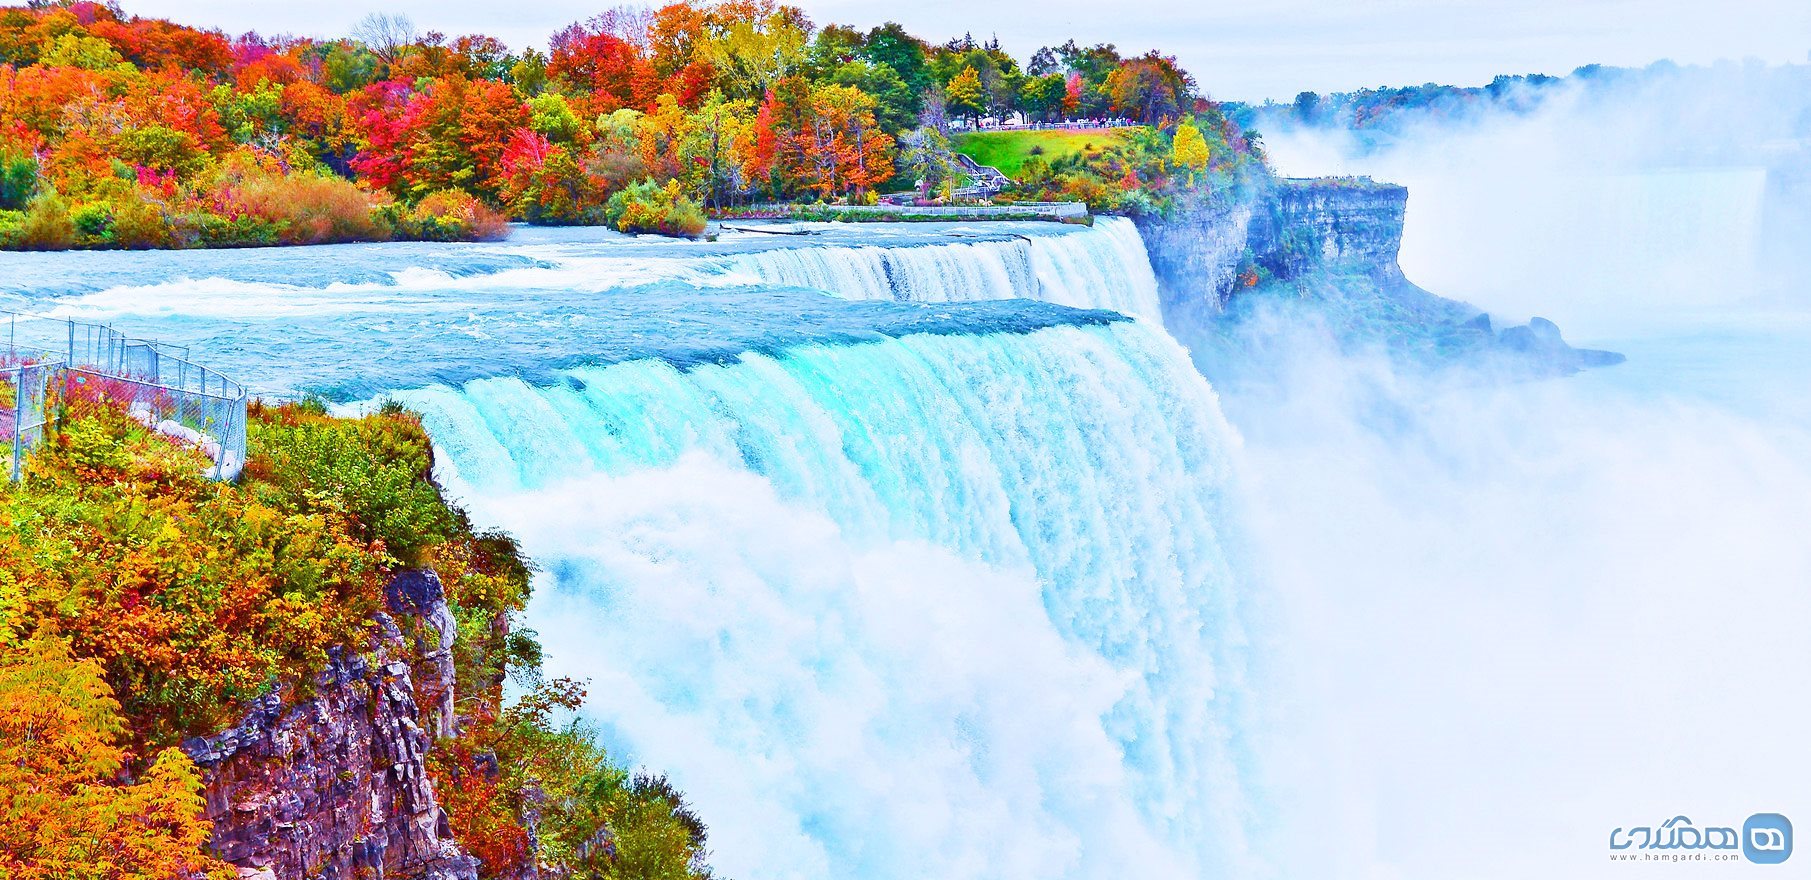 زیباترین آبشارها که با آبشار نیاگارا برابری می کنند